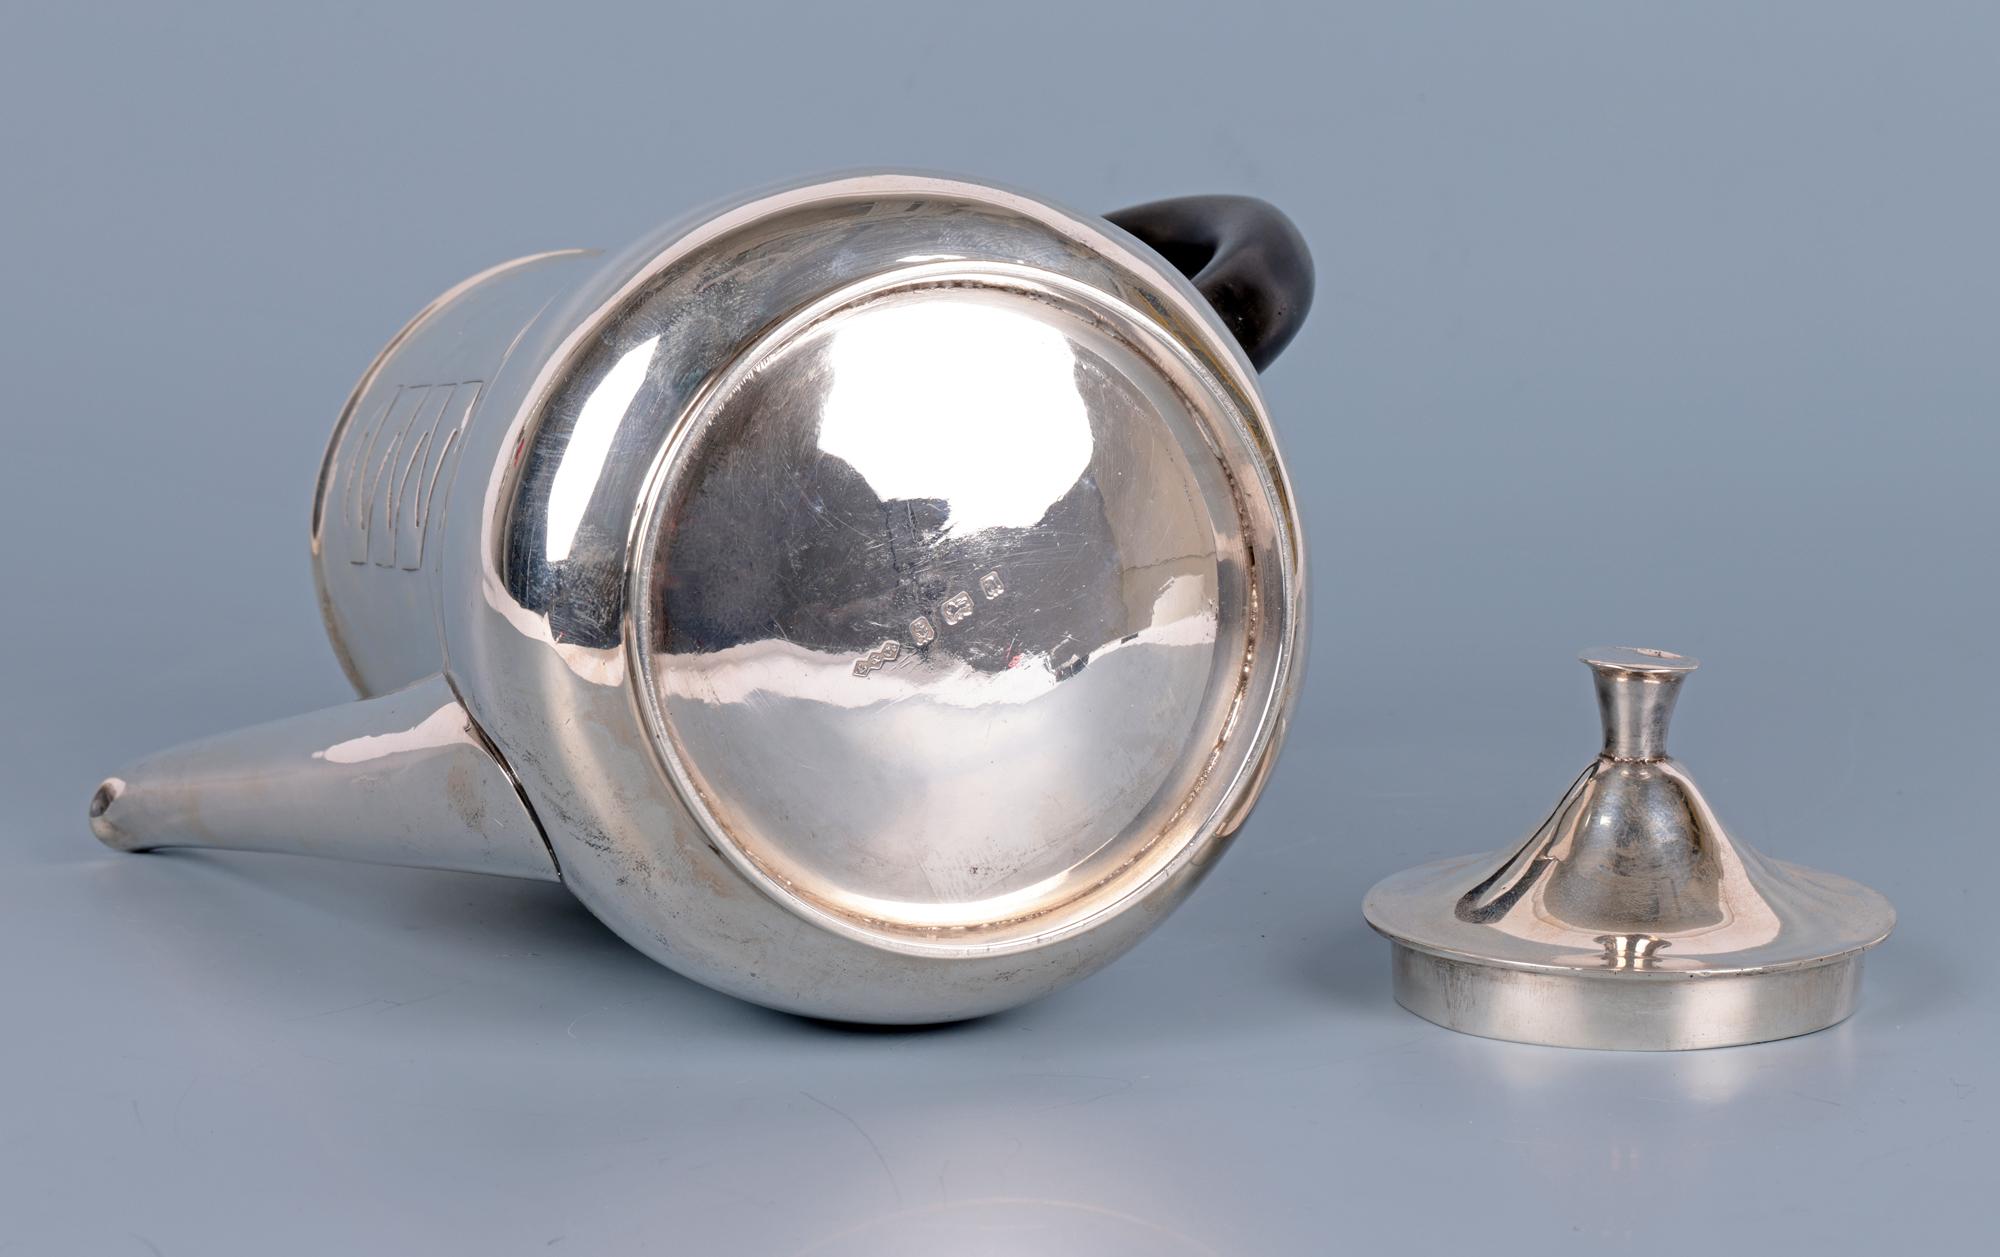  Archibald Knox Liberty & Co Silver Art Nouveau Silver Teapot For Sale 5